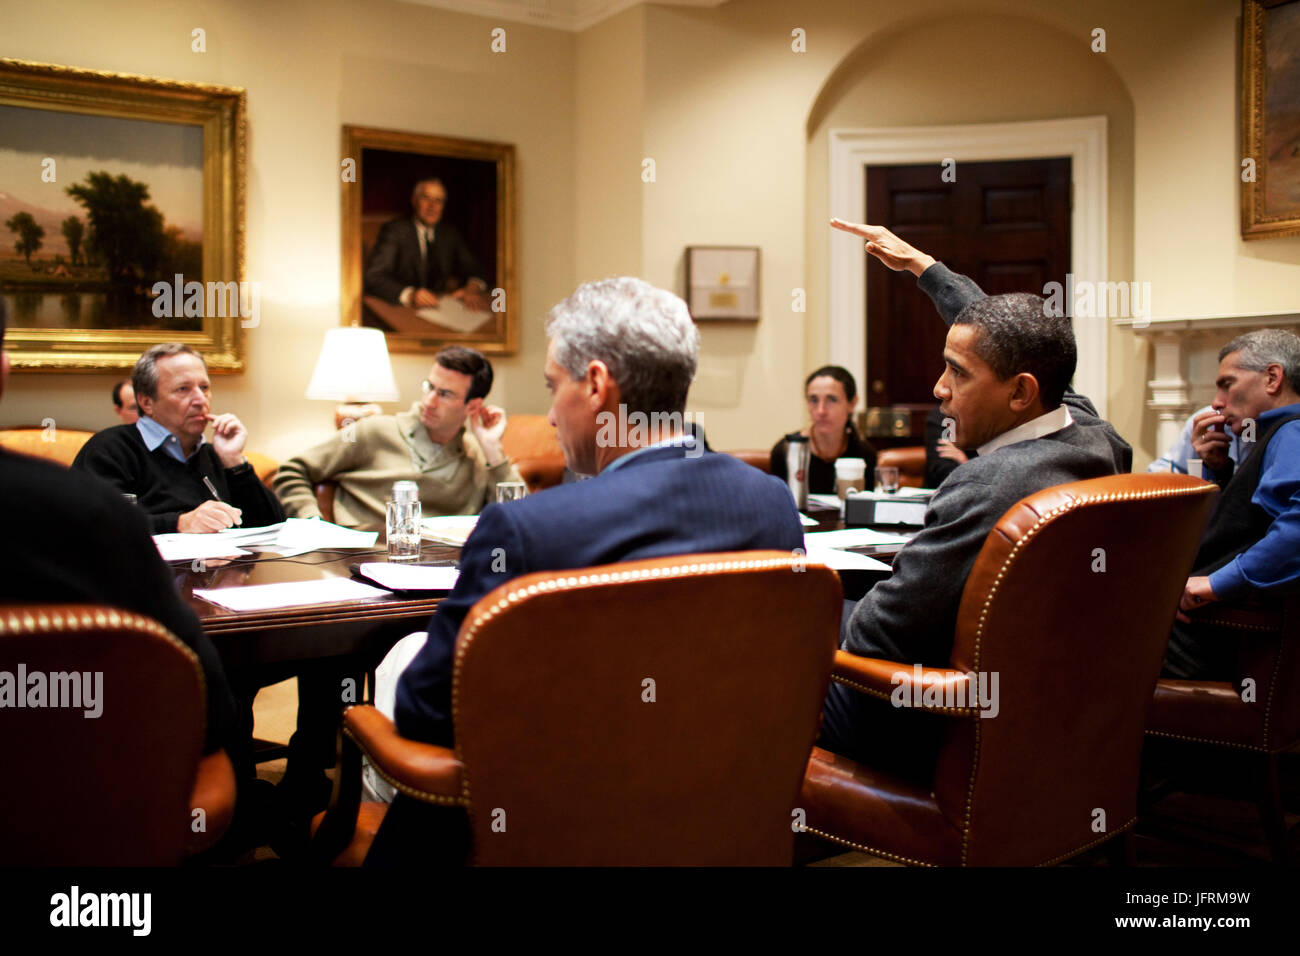 Le président Barack Obama rencontre les conseillers économiques du budget 2010 lors d'une réunion dans la Roosevelt Room. 1/24/09 Photo Officiel de la Maison Blanche par Pete Souza Banque D'Images